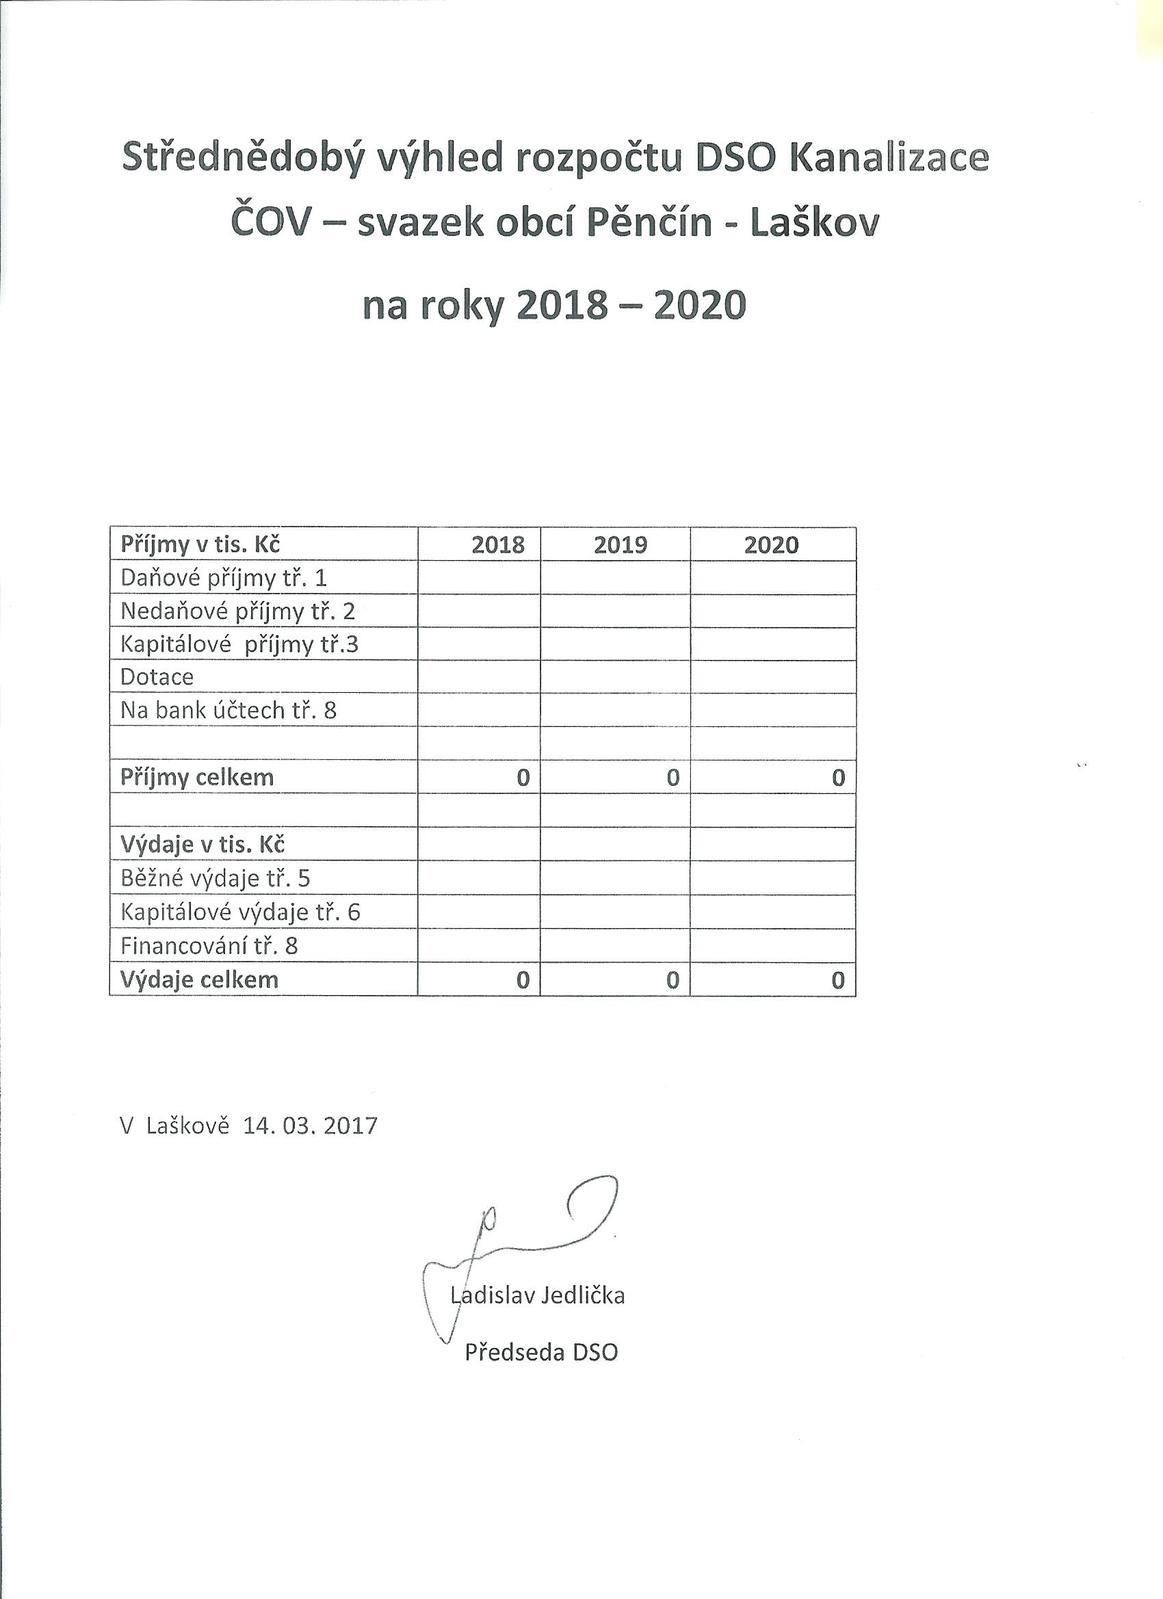 Střednědobý výhled rozpočtu DSO Kanalizace ČOV 2018 - 2020.jpg